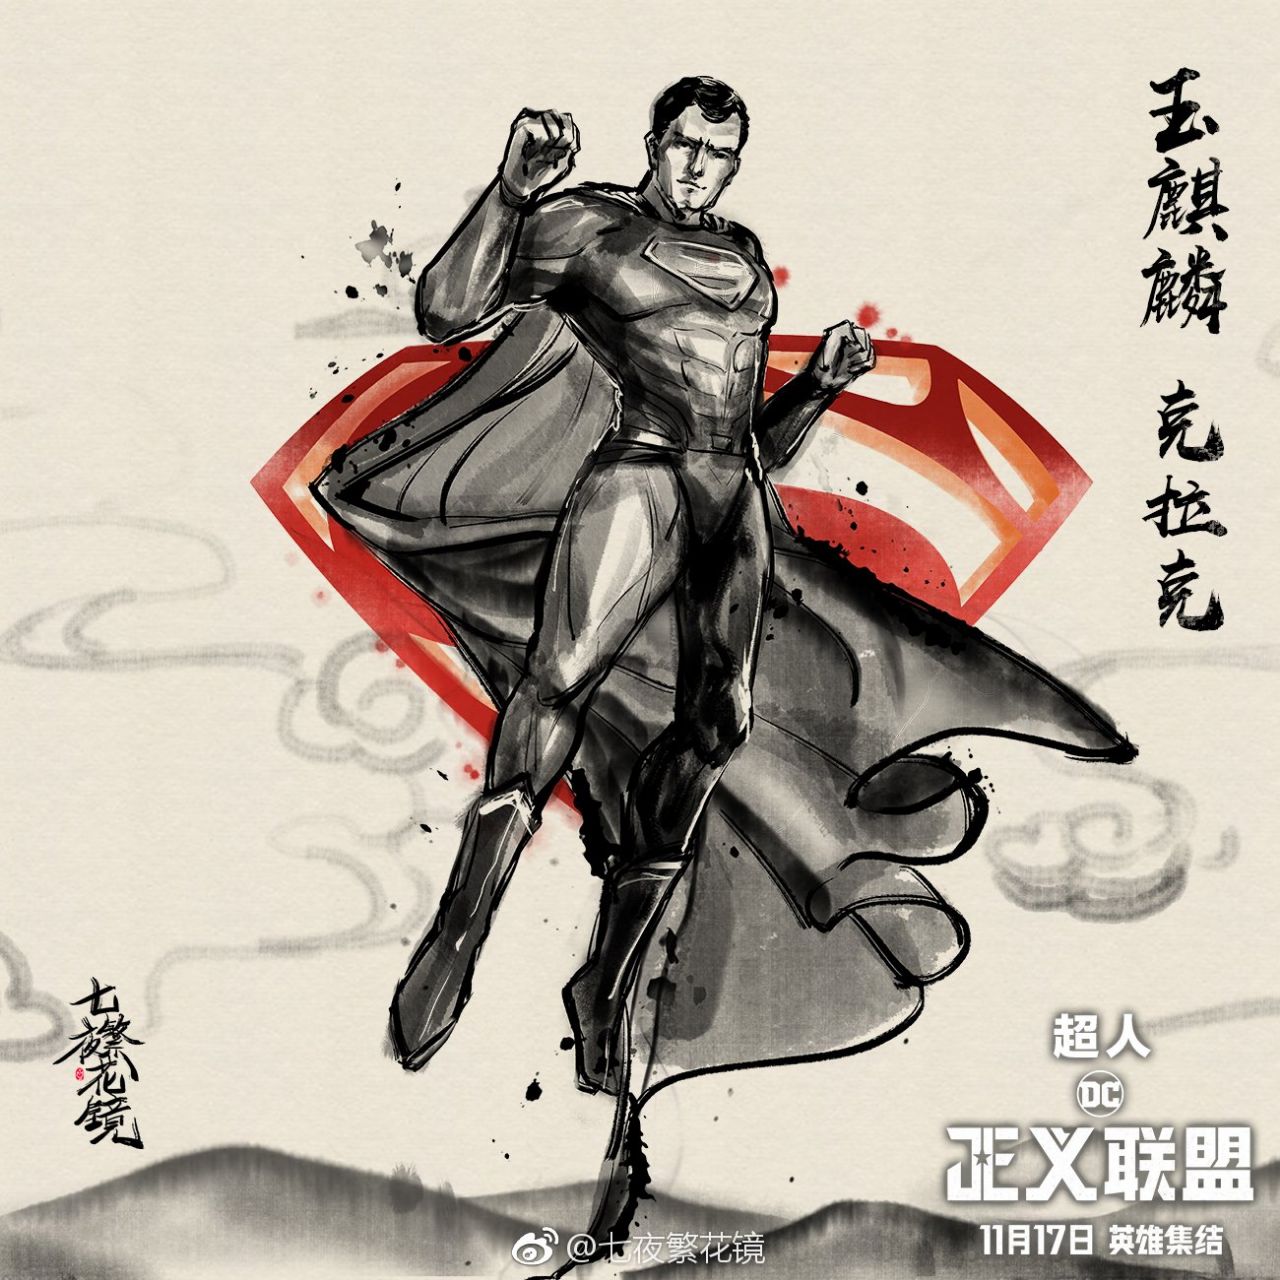 Liga da Justiça ganha novos pôsteres chineses destacando os heróis!